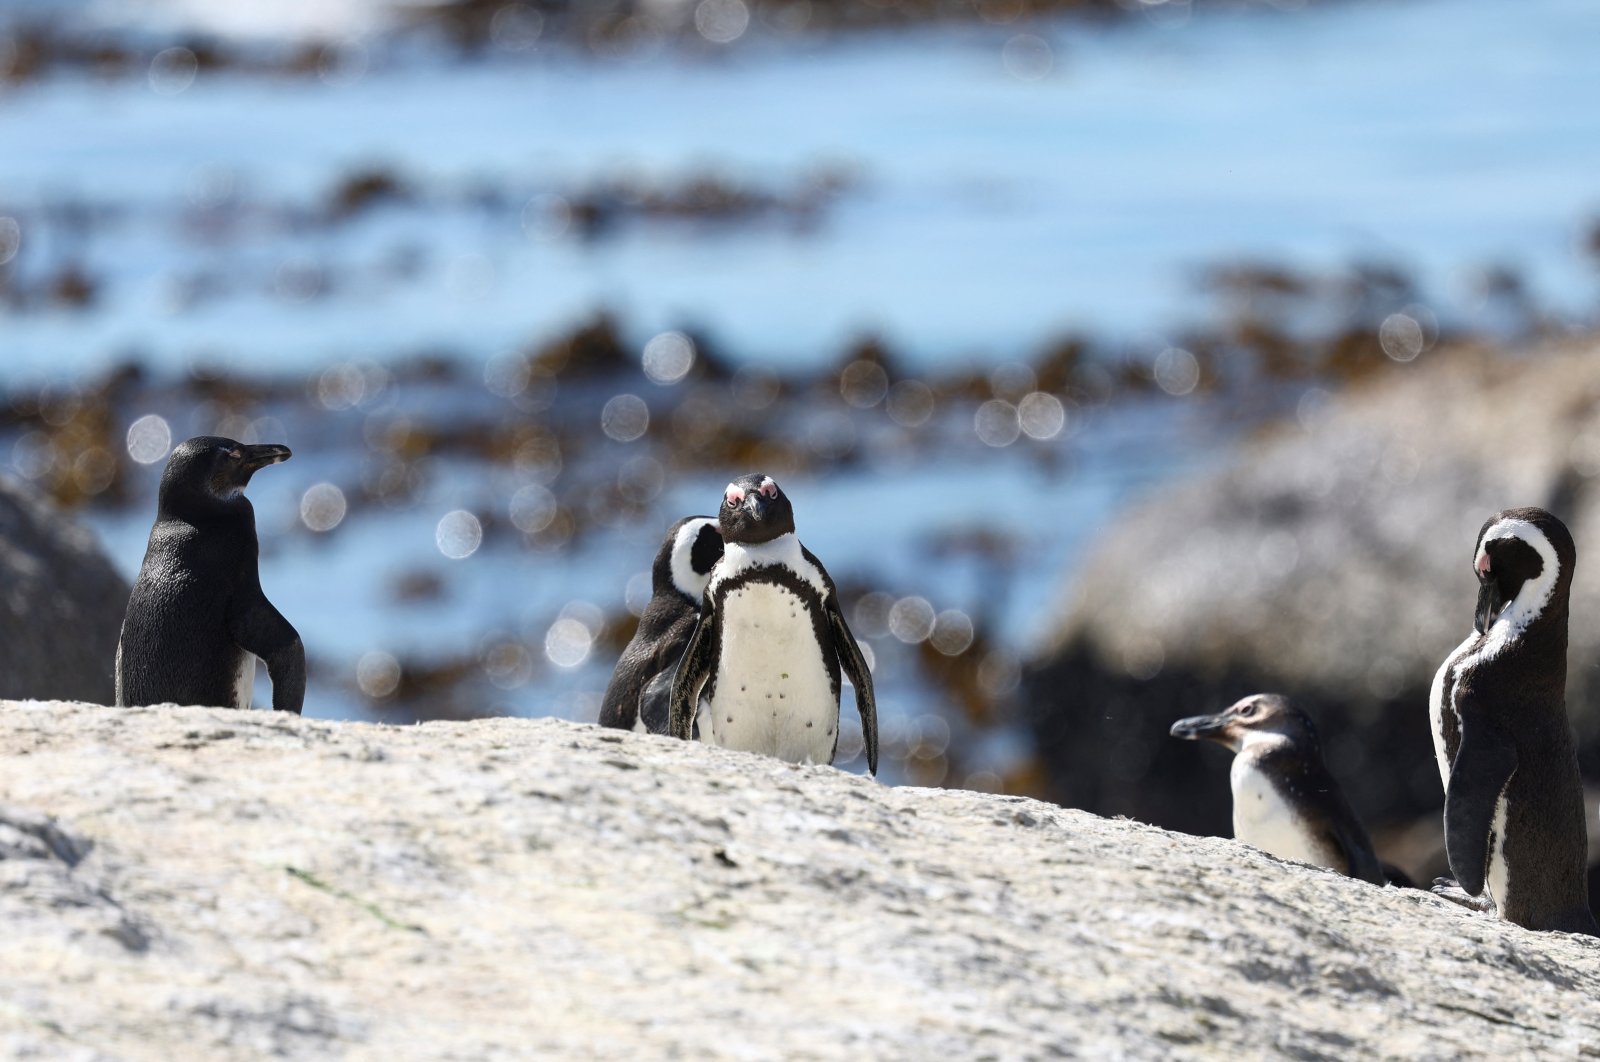 Wabah flu burung membunuh lebih banyak penguin di koloni Afrika Selatan